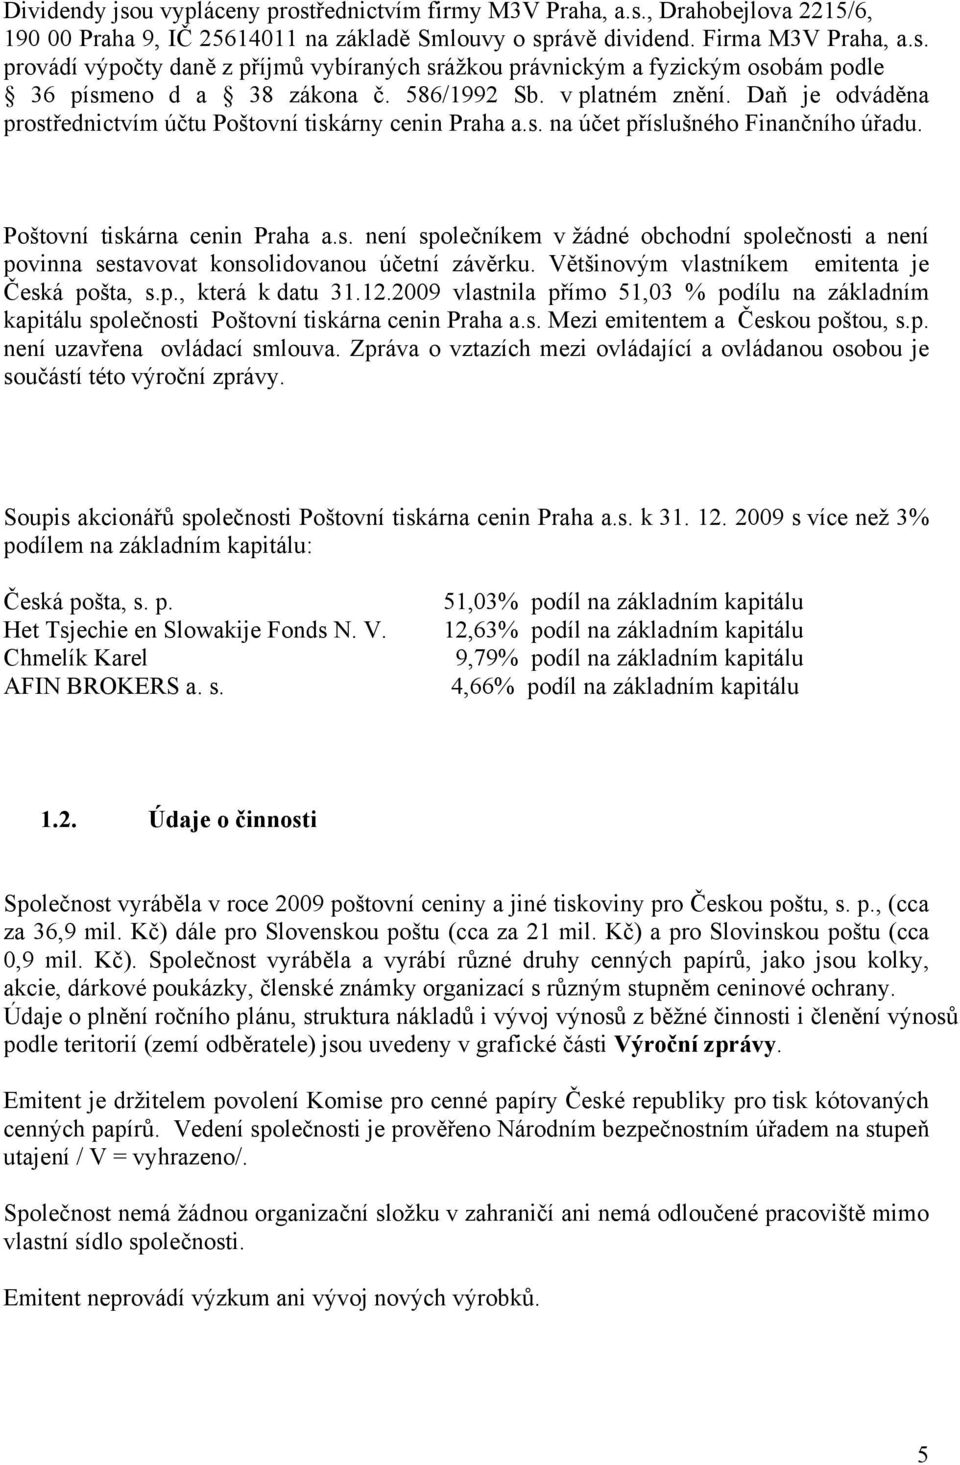 Většinovým vlastníkem emitenta je Česká pošta, s.p., která k datu 31.12.2009 vlastnila přímo 51,03 % podílu na základním kapitálu společnosti Poštovní tiskárna cenin Praha a.s. Mezi emitentem a Českou poštou, s.